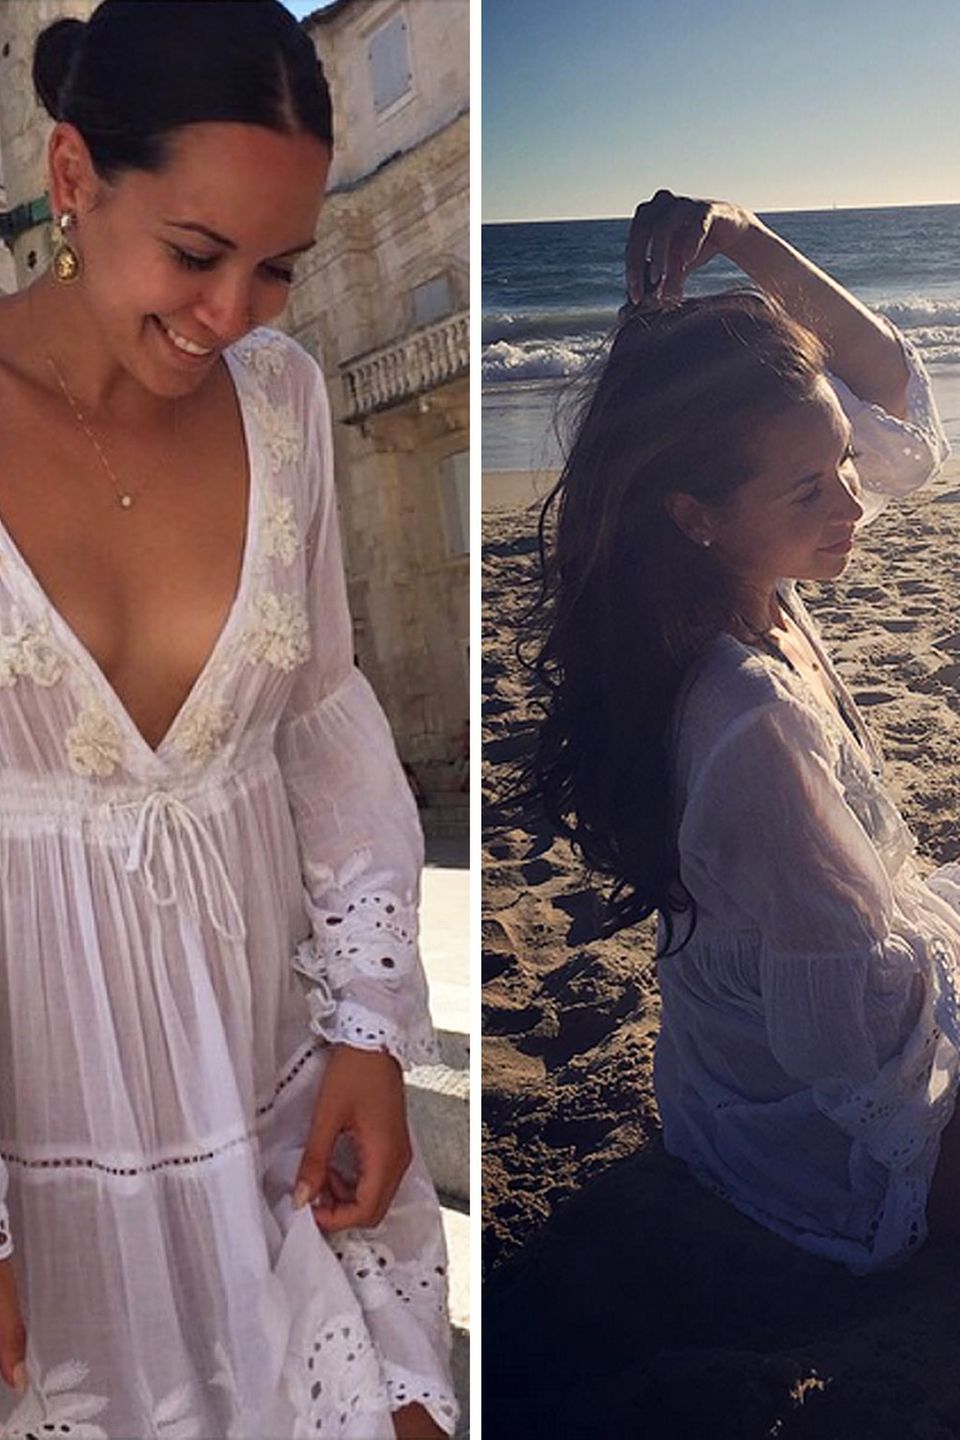 Nicht ohne mein Sommerkleid! Mandy Capristo hat schon in ihrem Kroation-Urlaub im Juli 2015 mit diesem romantischen Dress bezaubert. Die Besucher am Strand von L.A. haben das sexy Outfit auch schon bewundern dürfen, wie sie auf ihrem Instagram-Profil mit diesem verträumten Erinnerungsfoto zeigt.